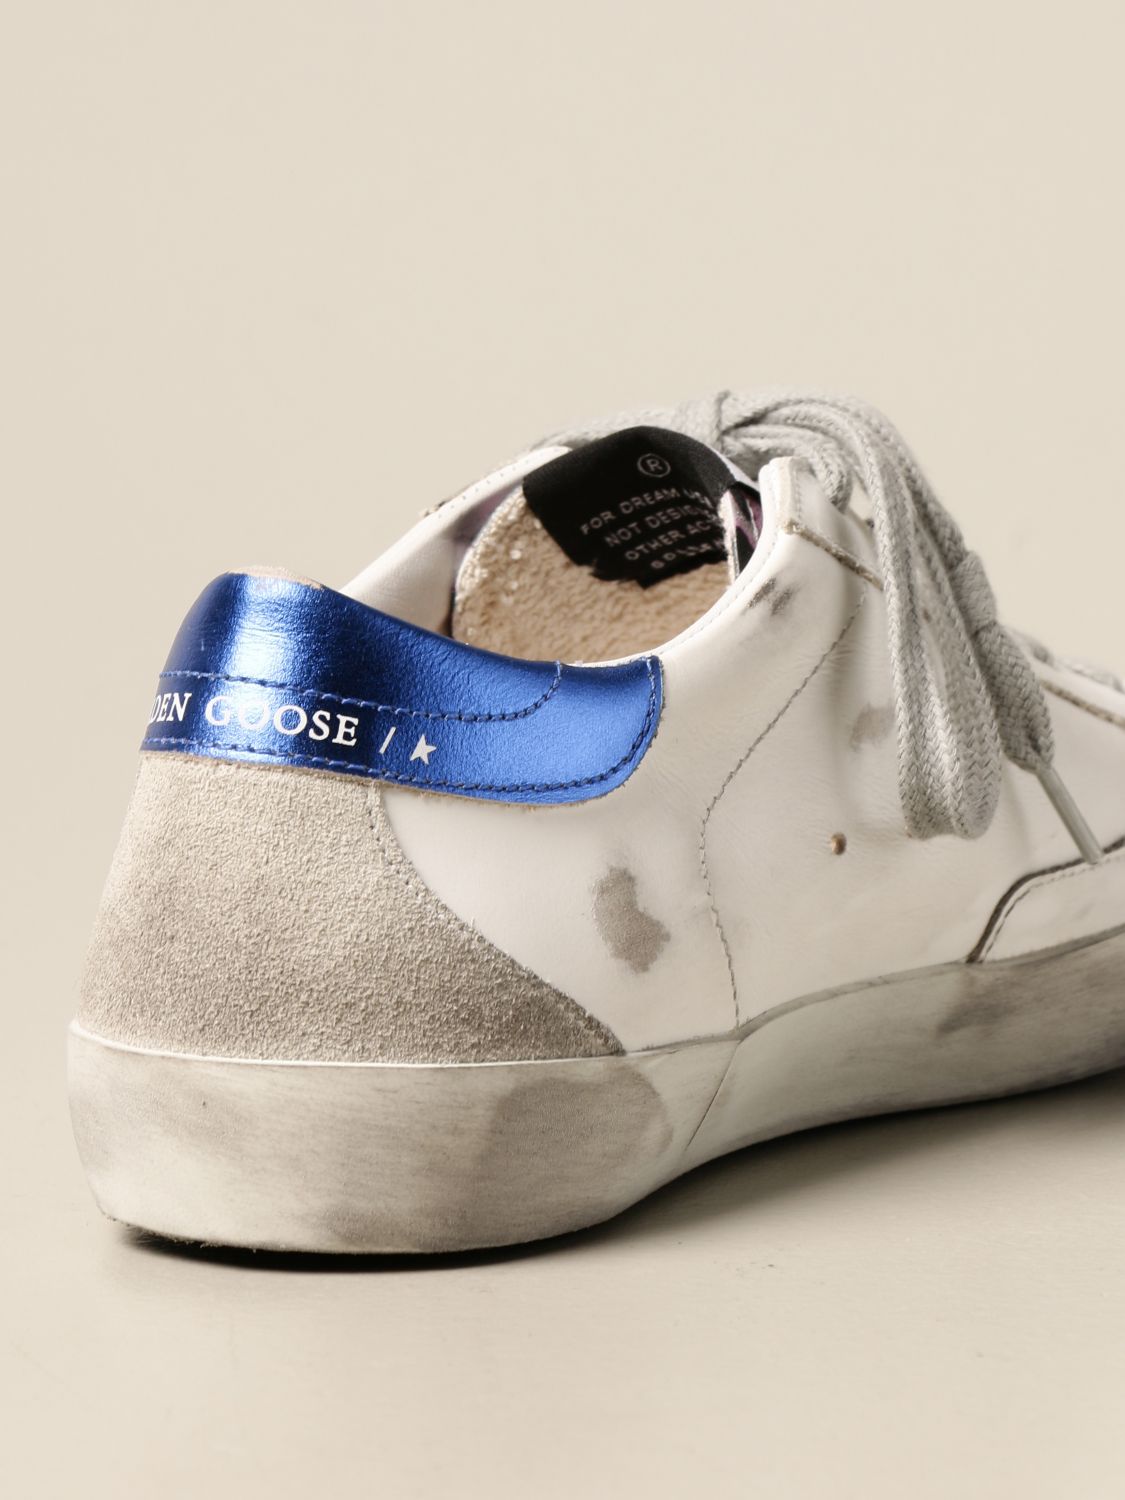 GOLDEN GOOSE: Superstar animalier lurex sneakers | Shoes Golden Goose ...